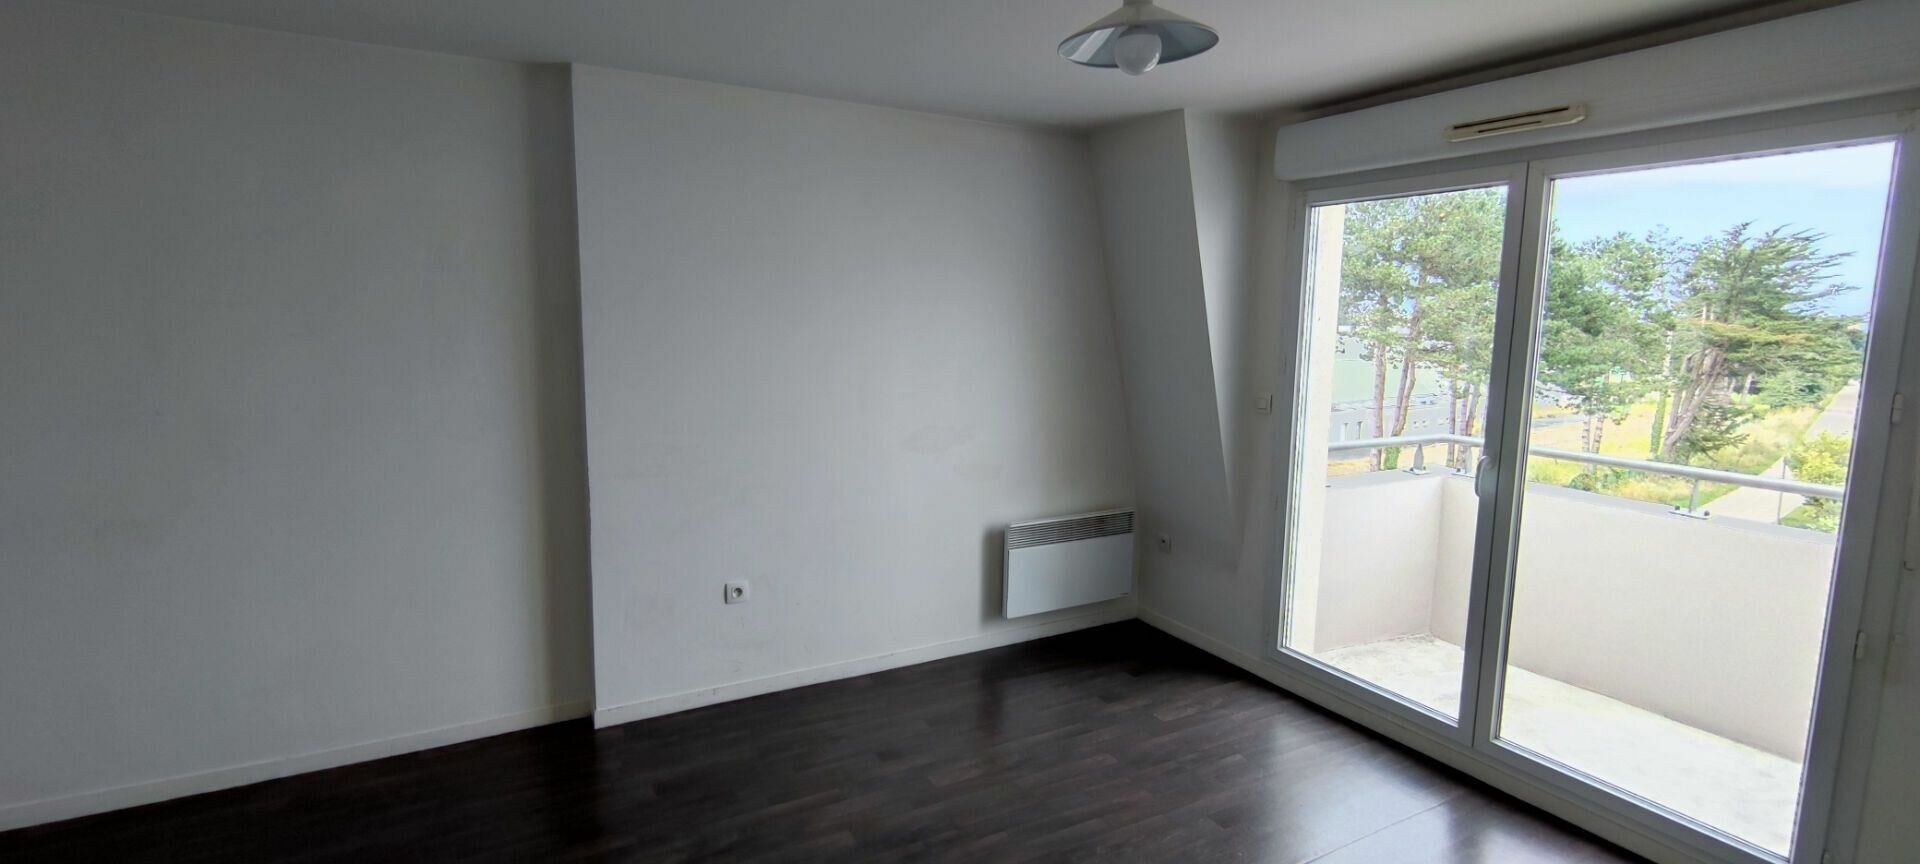 Appartement à vendre 2 38.36m2 à Saint-Brieuc vignette-10